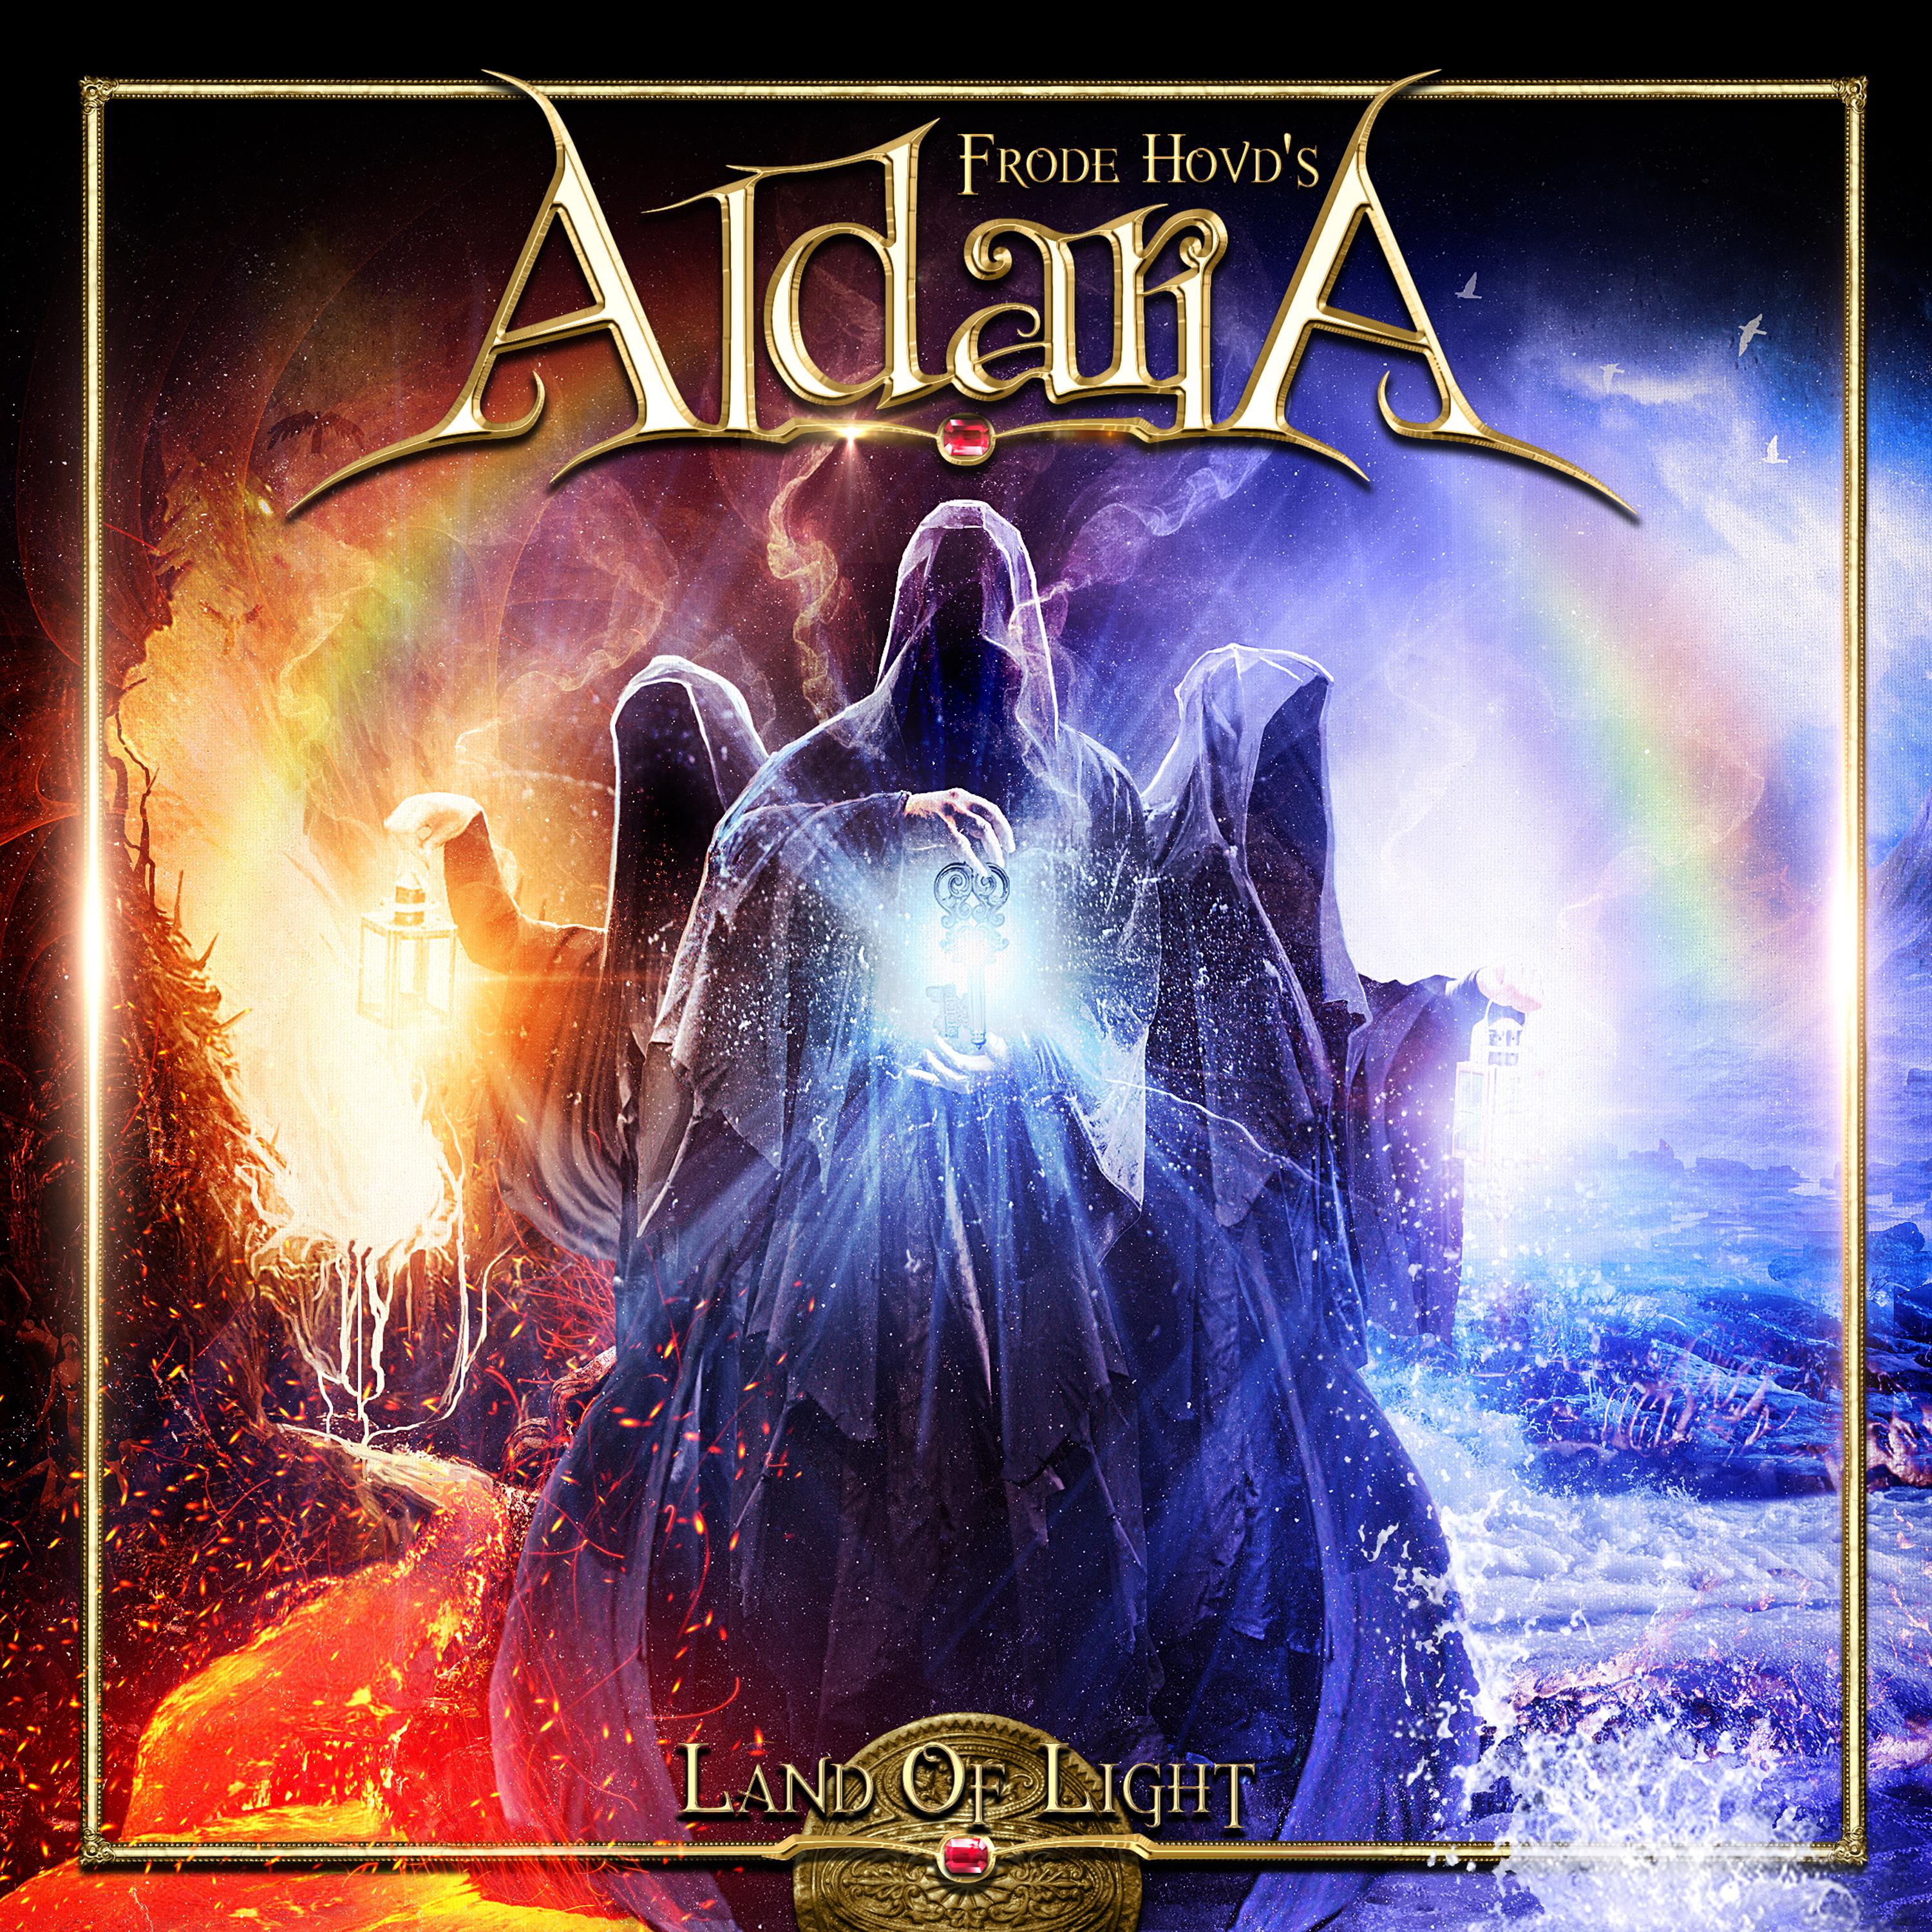 Aldaria – Land of Light